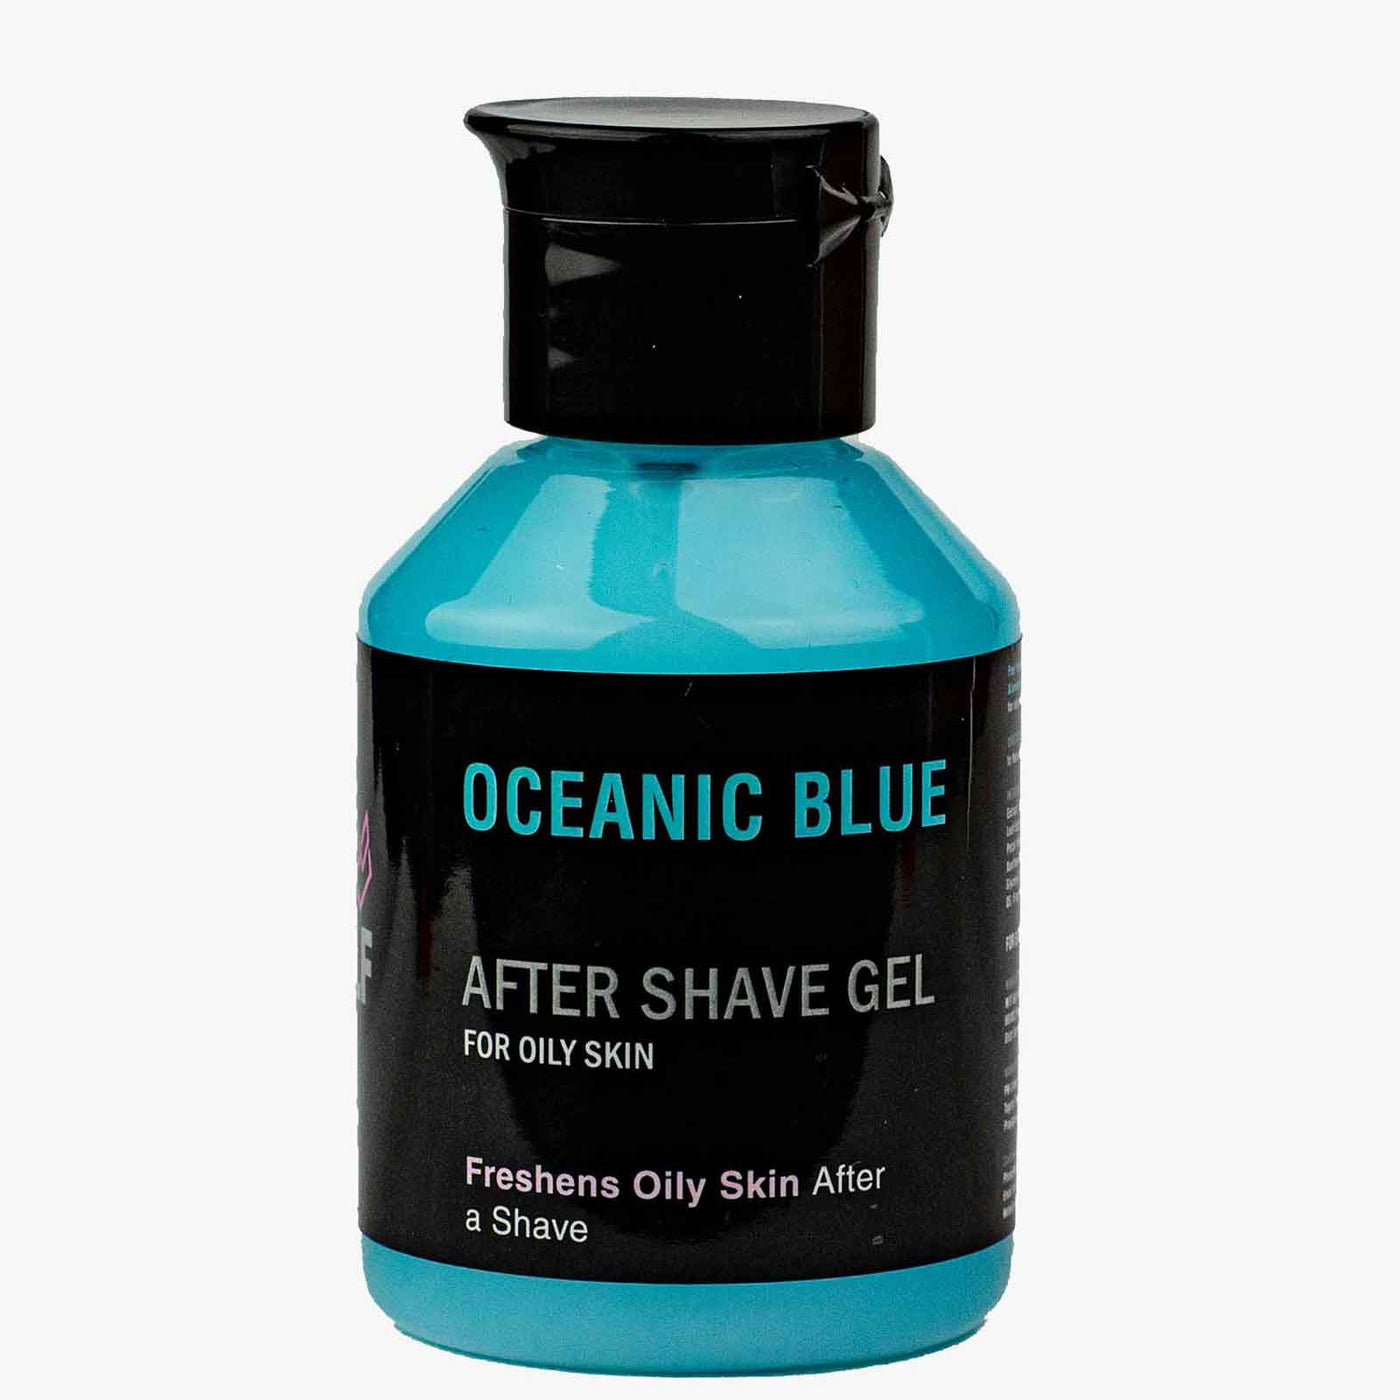 After Shave Gel - OCEANIC BLUE - AftershavePinkWoolf